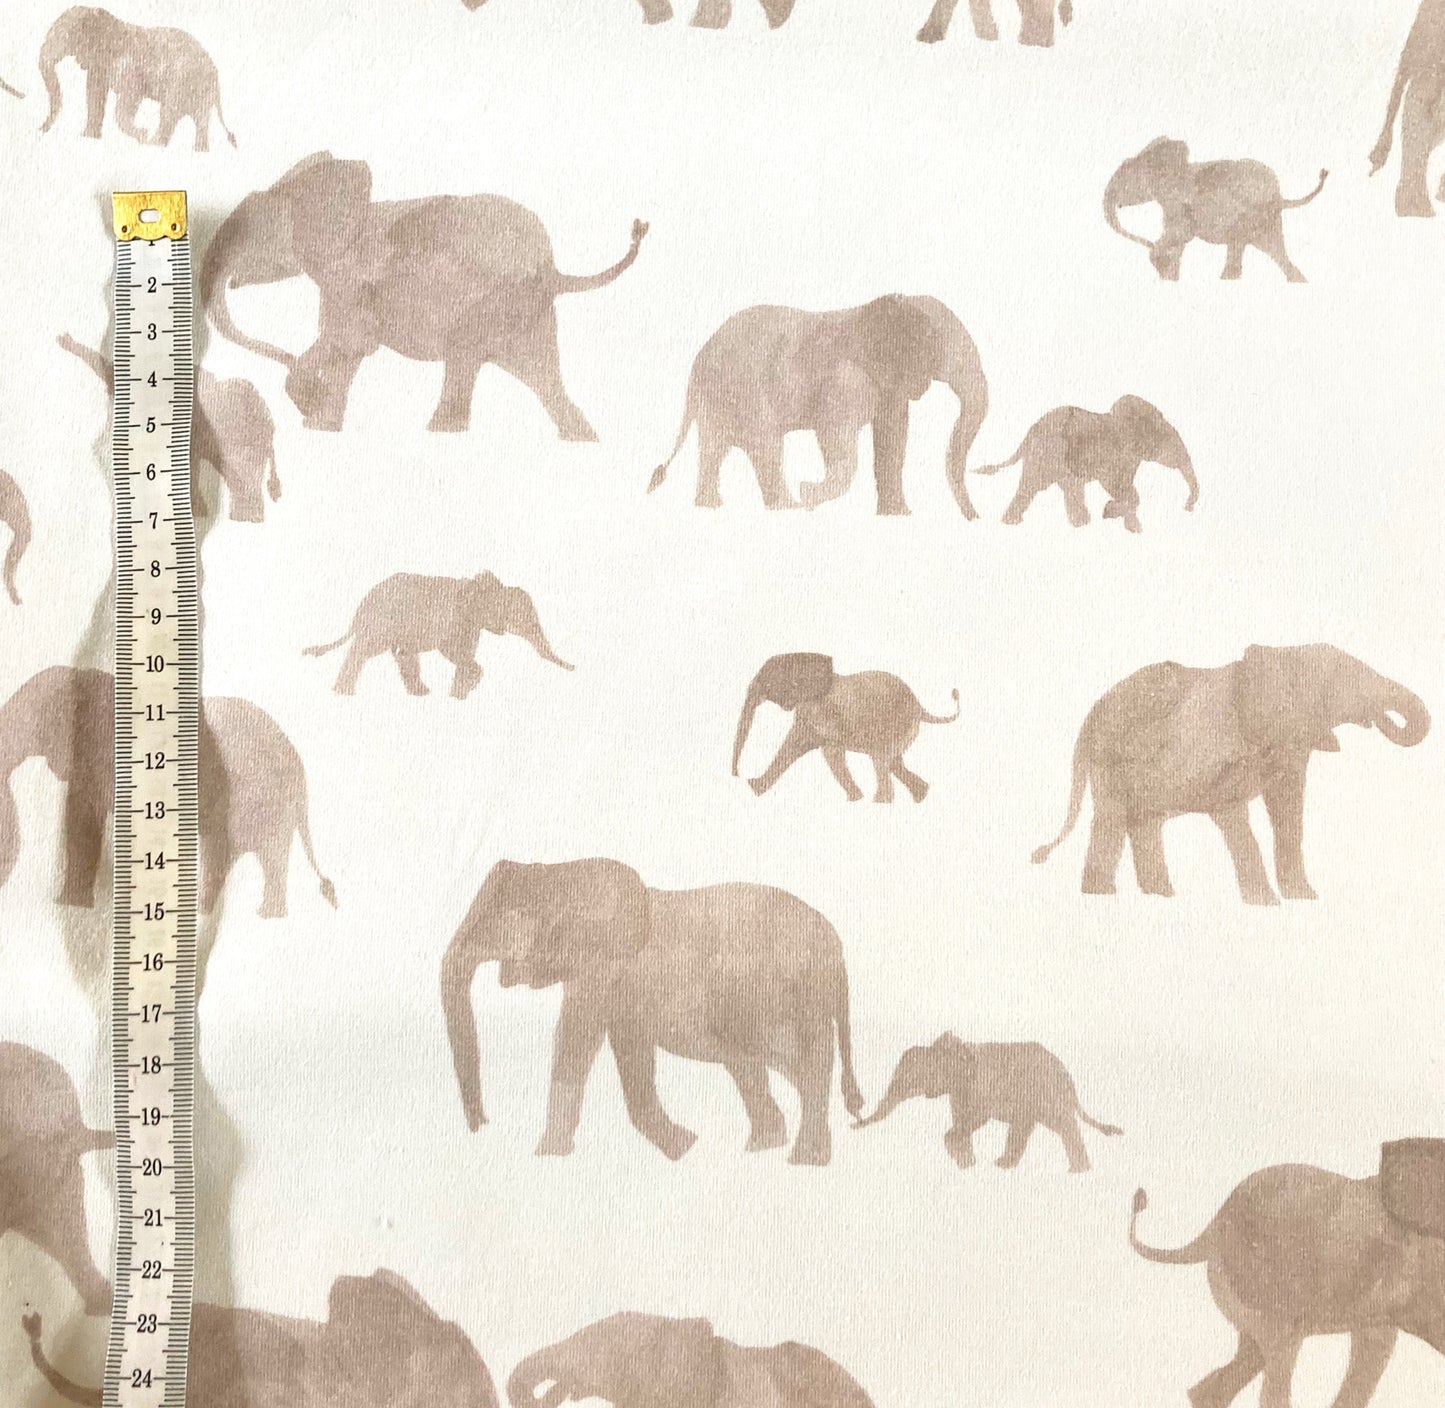 Stel je eigen duurzame baby- en kinderkleding samen. Kies uit de stoffencollectie van webshop Cuteez! Kies bv de offwhite tricot met zandkleurige olifanten, deze tricot Elephants. 